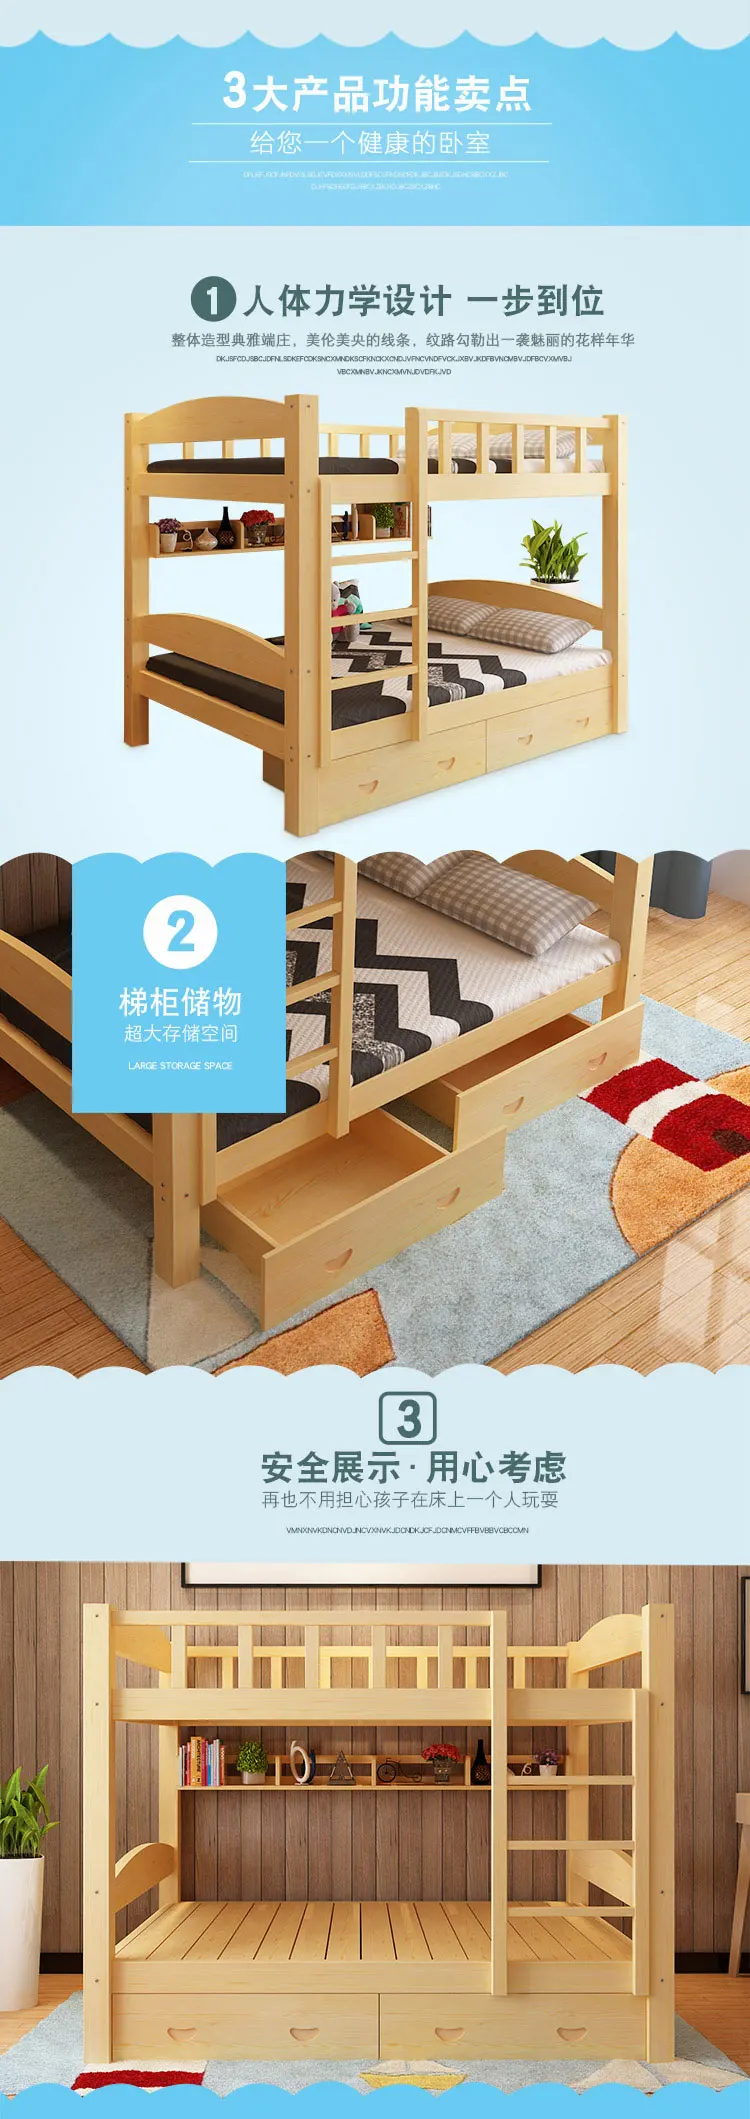 Модные кровати Луи, простые современные кровати из твердой древесины, верхняя и нижняя койка для взрослых, высокий и низкий уровень, двойные детские кровати